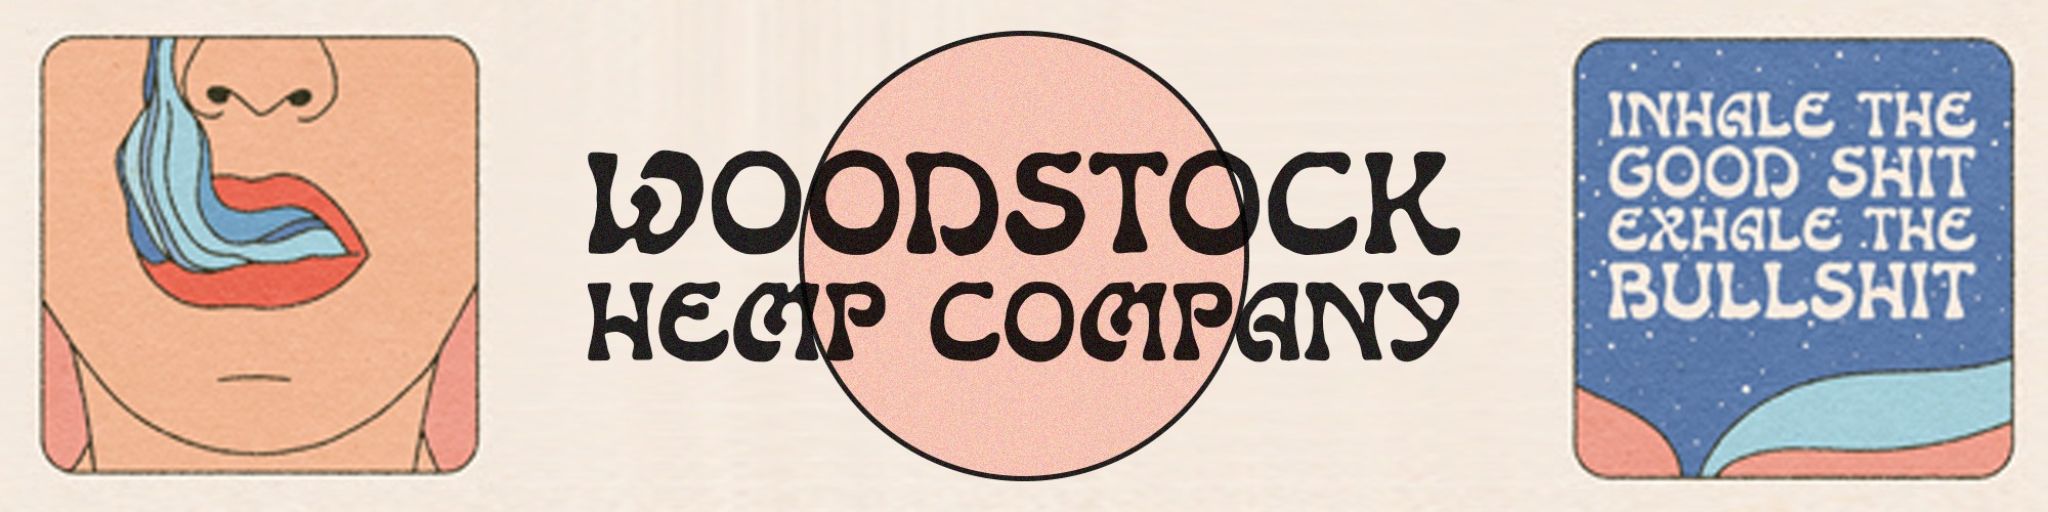 Woodstock Hemp Company